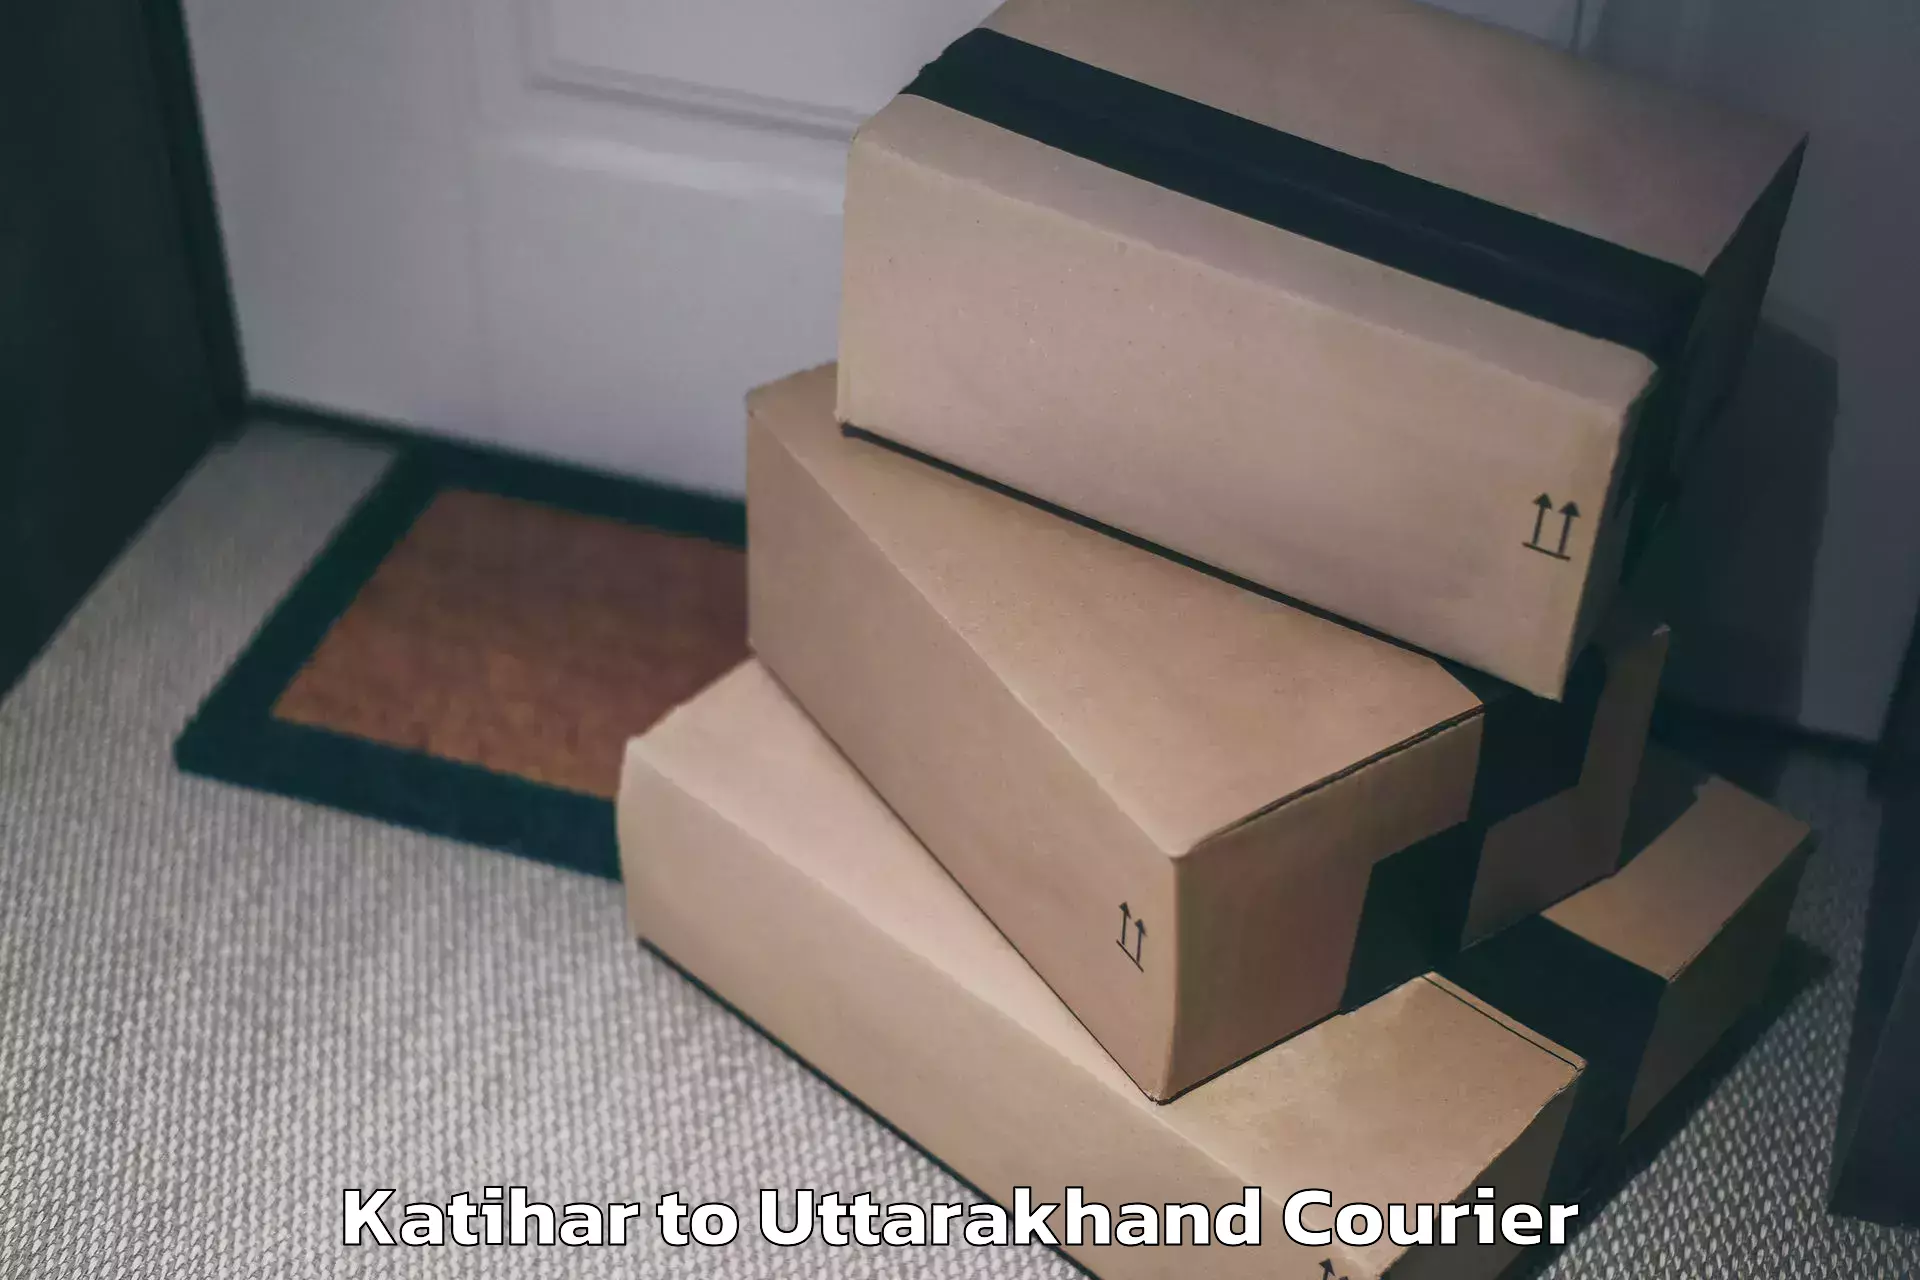 Door-to-door baggage service Katihar to NIT Garhwal